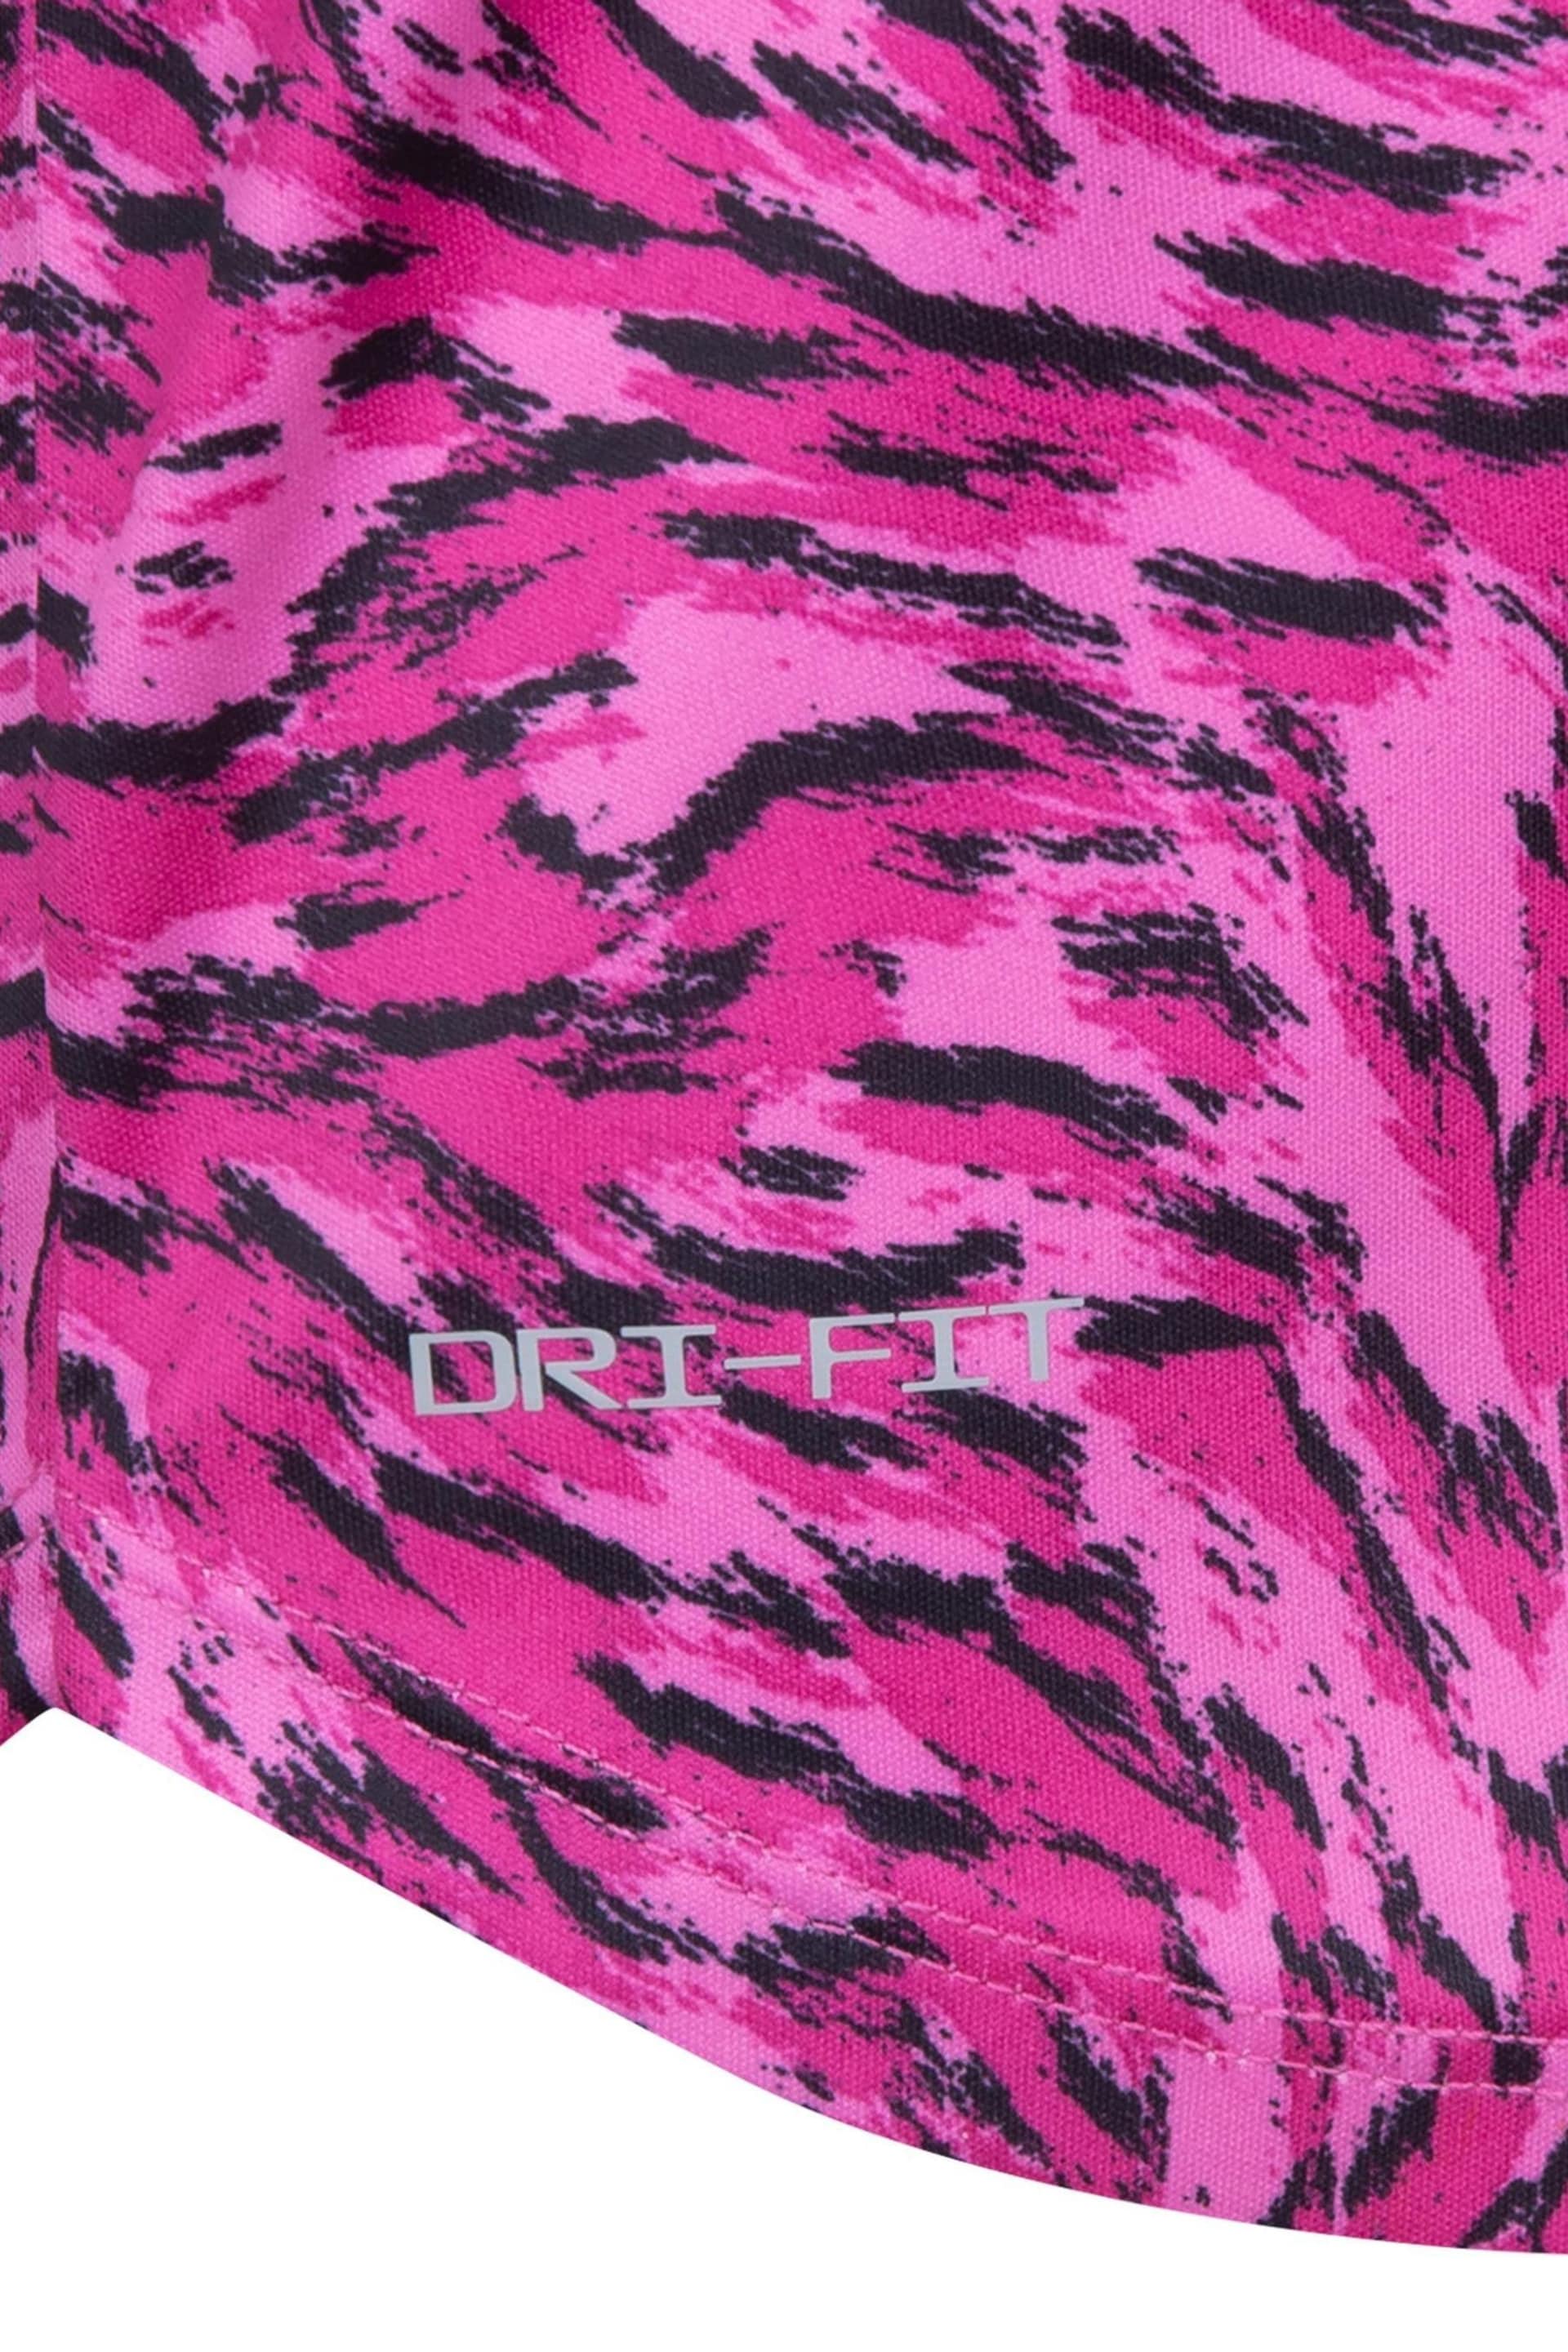 Nike Pink Little Kids Veneer Vest and Shorts Set - Image 5 of 7